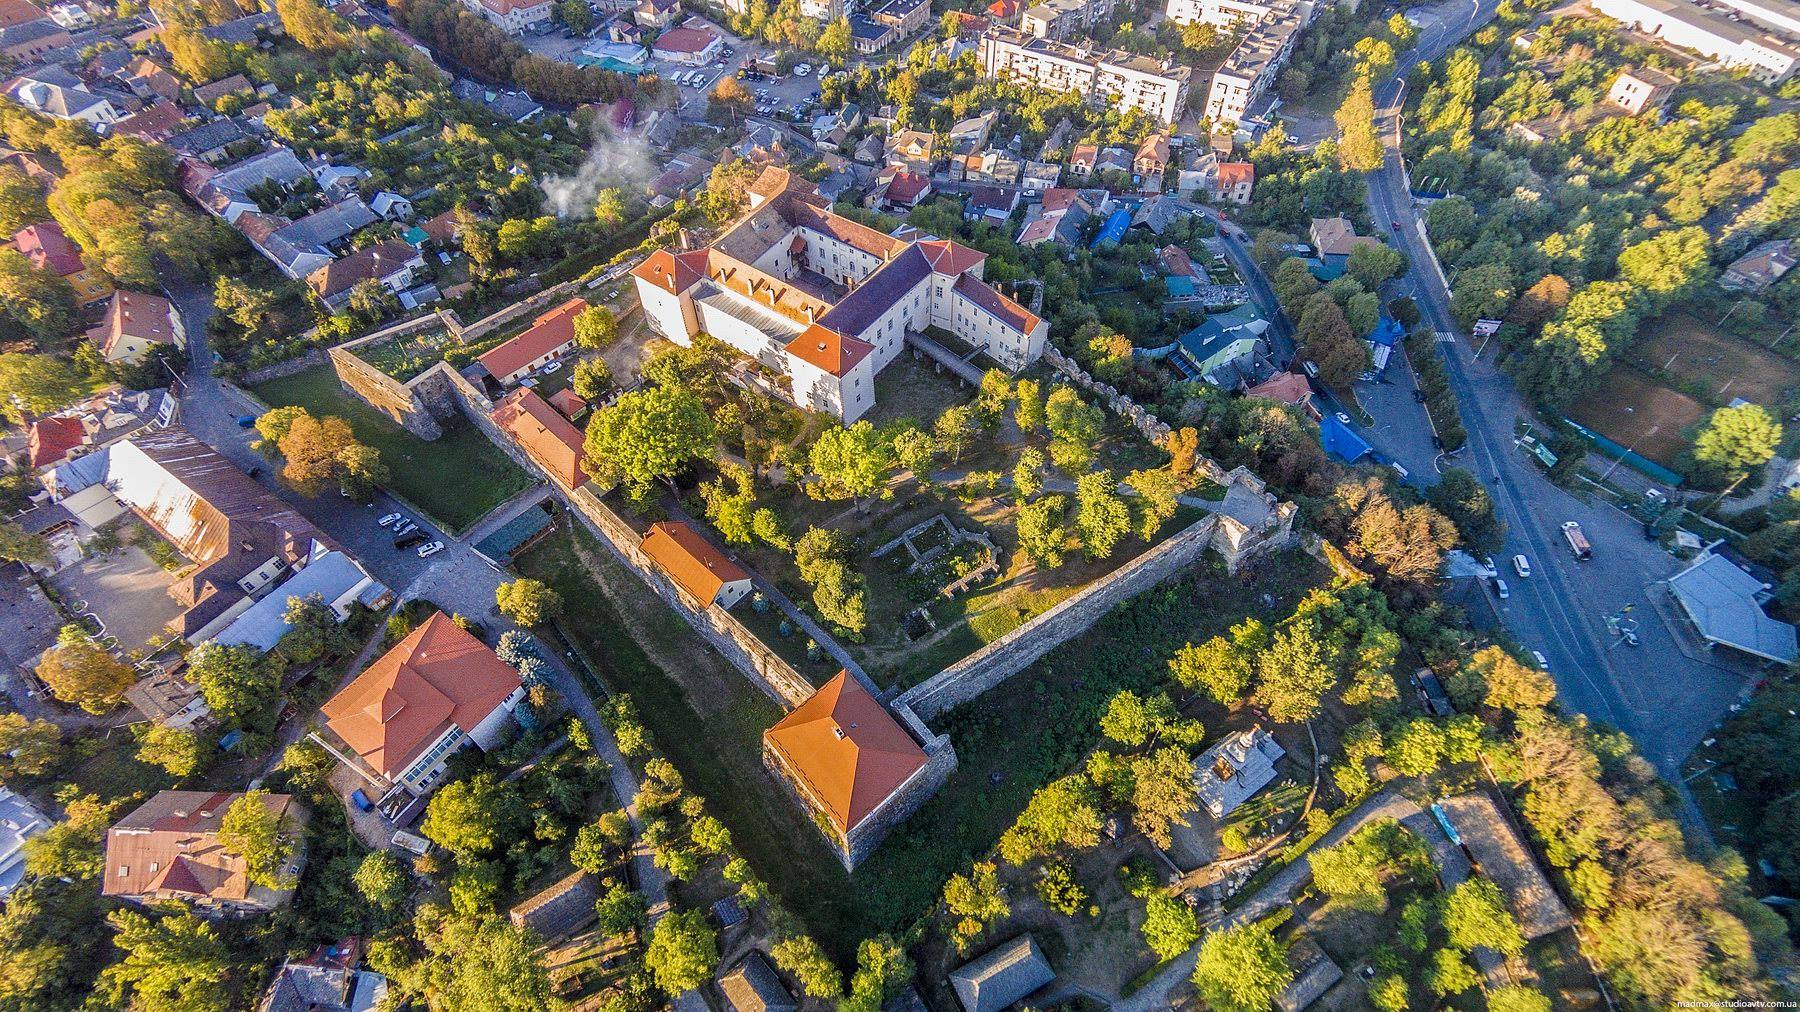 Ужгородський замок – музей в Ужгороді, що приховує багато таємниць, цікавий дорослим та дітям, місце для натхнення та простір пізнання історії Закарпаття.